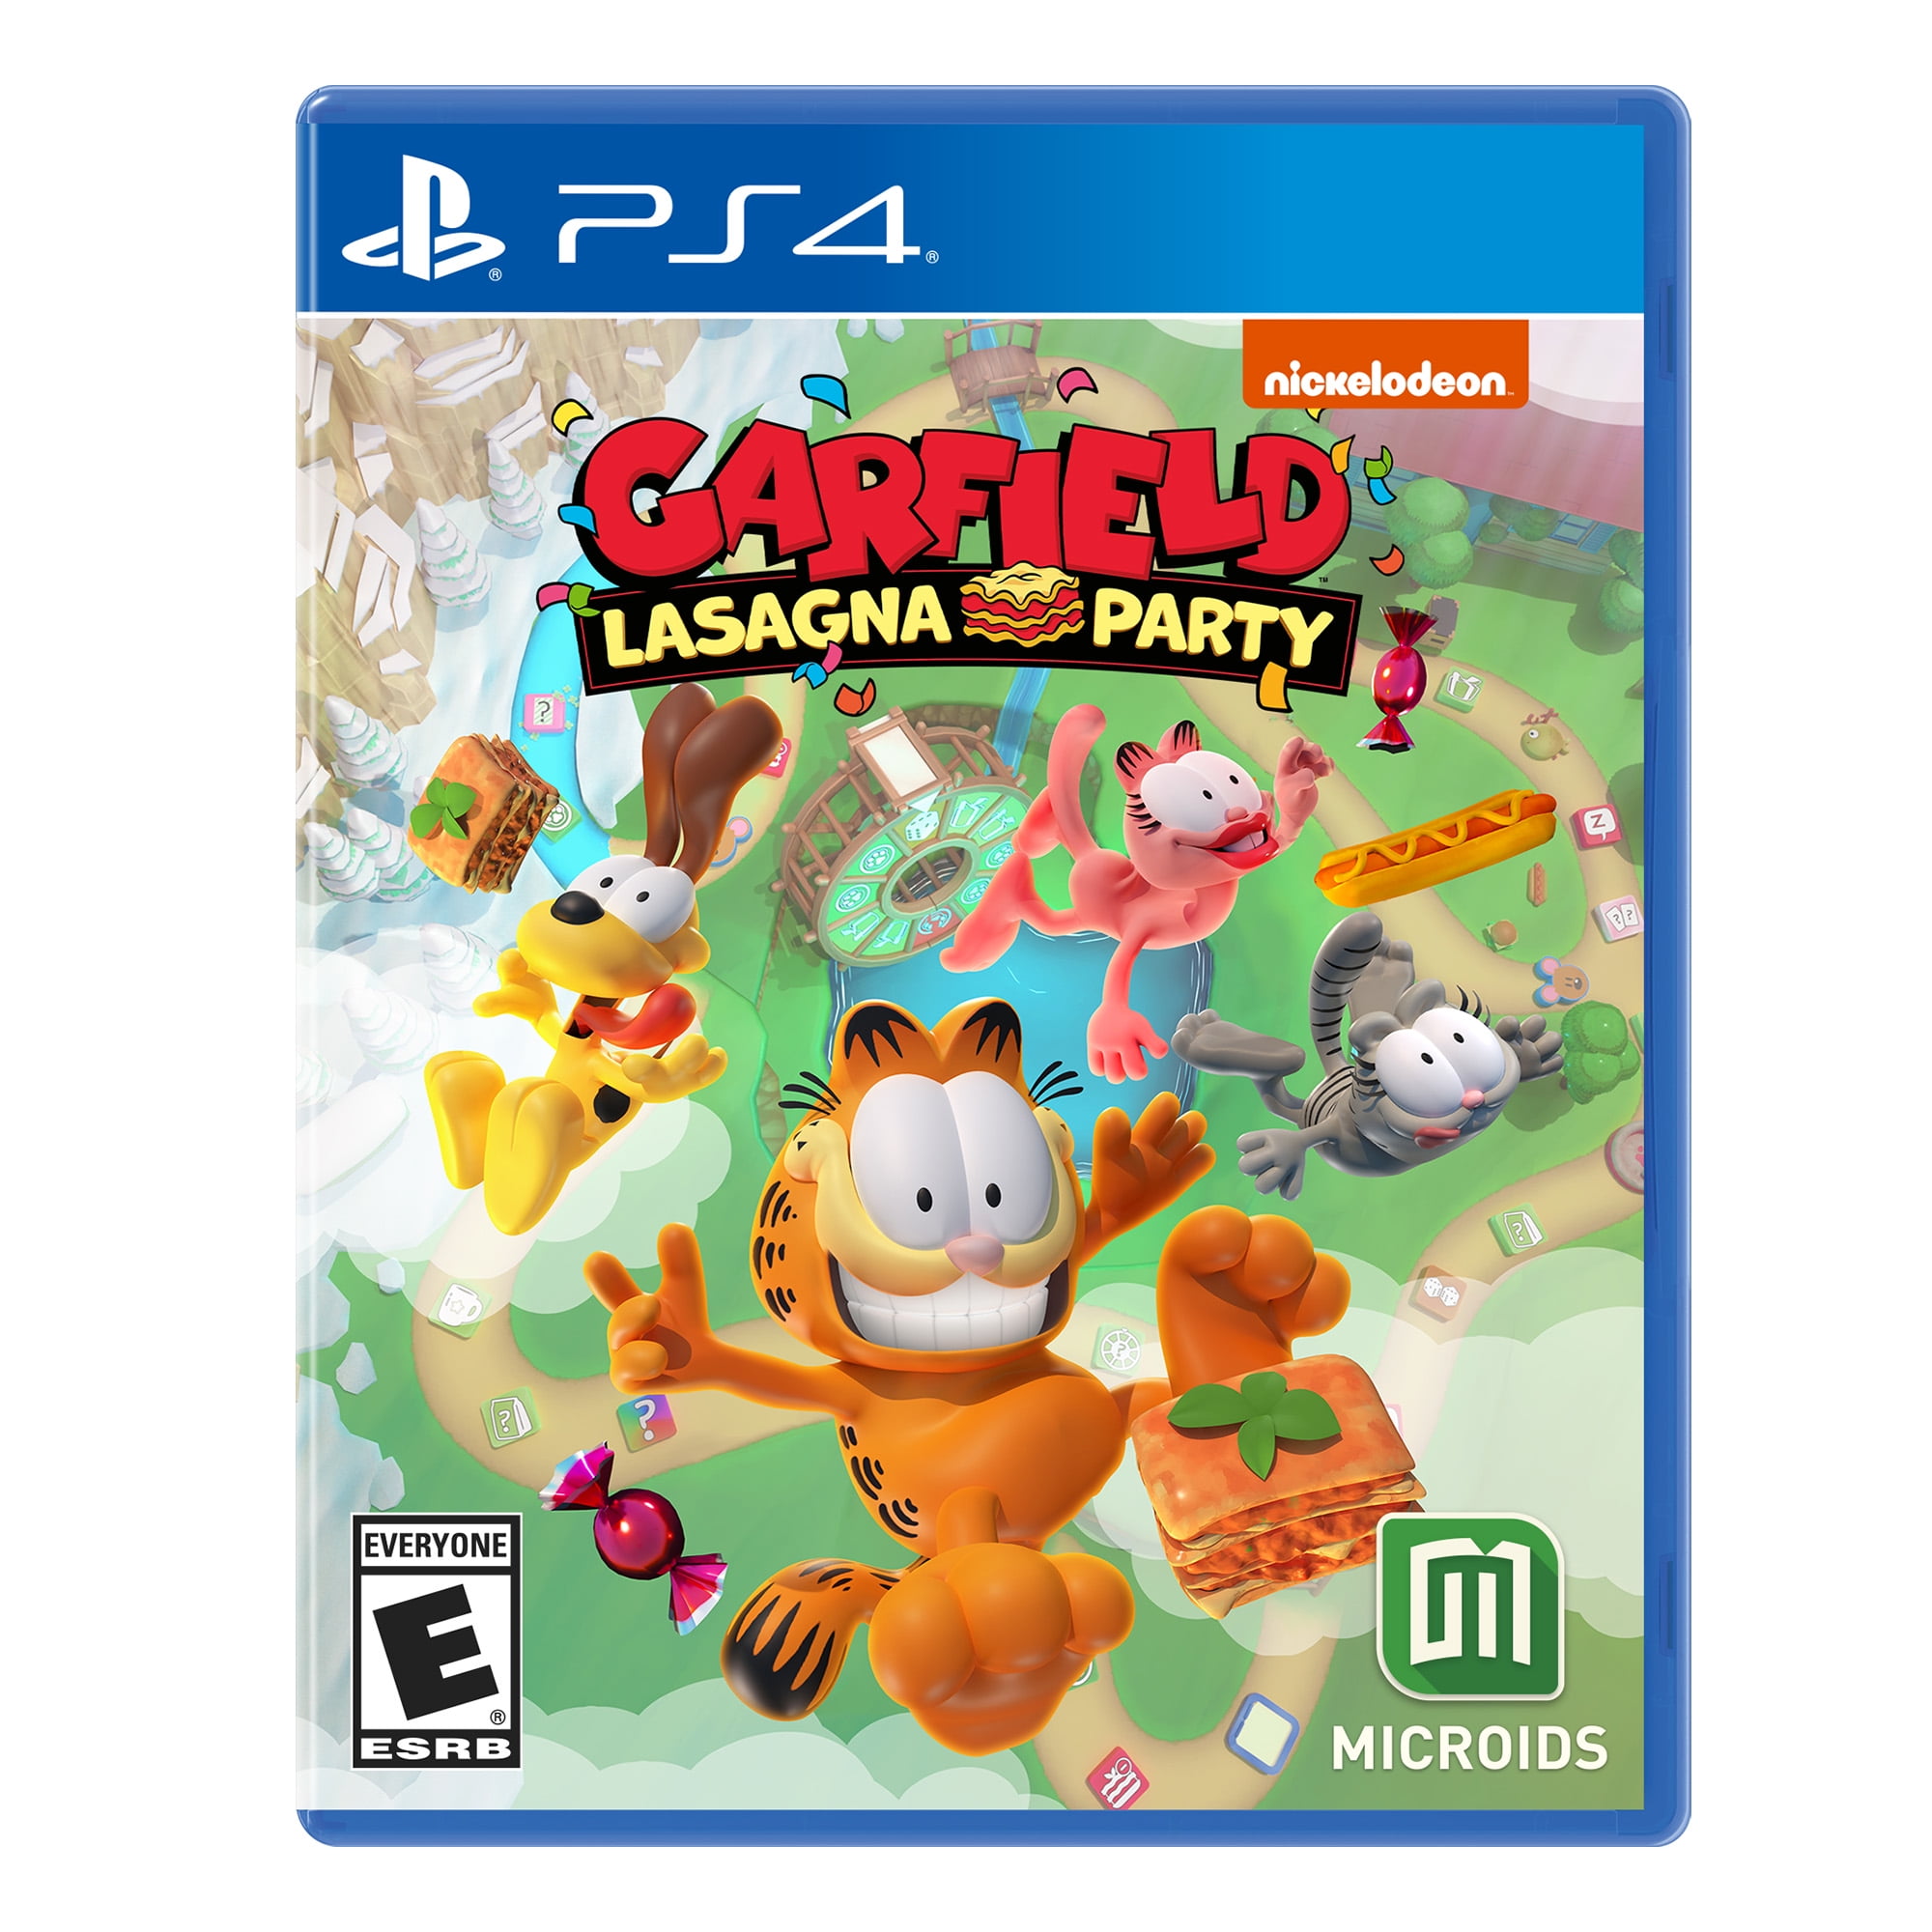 Garfield Games Online (FREE)